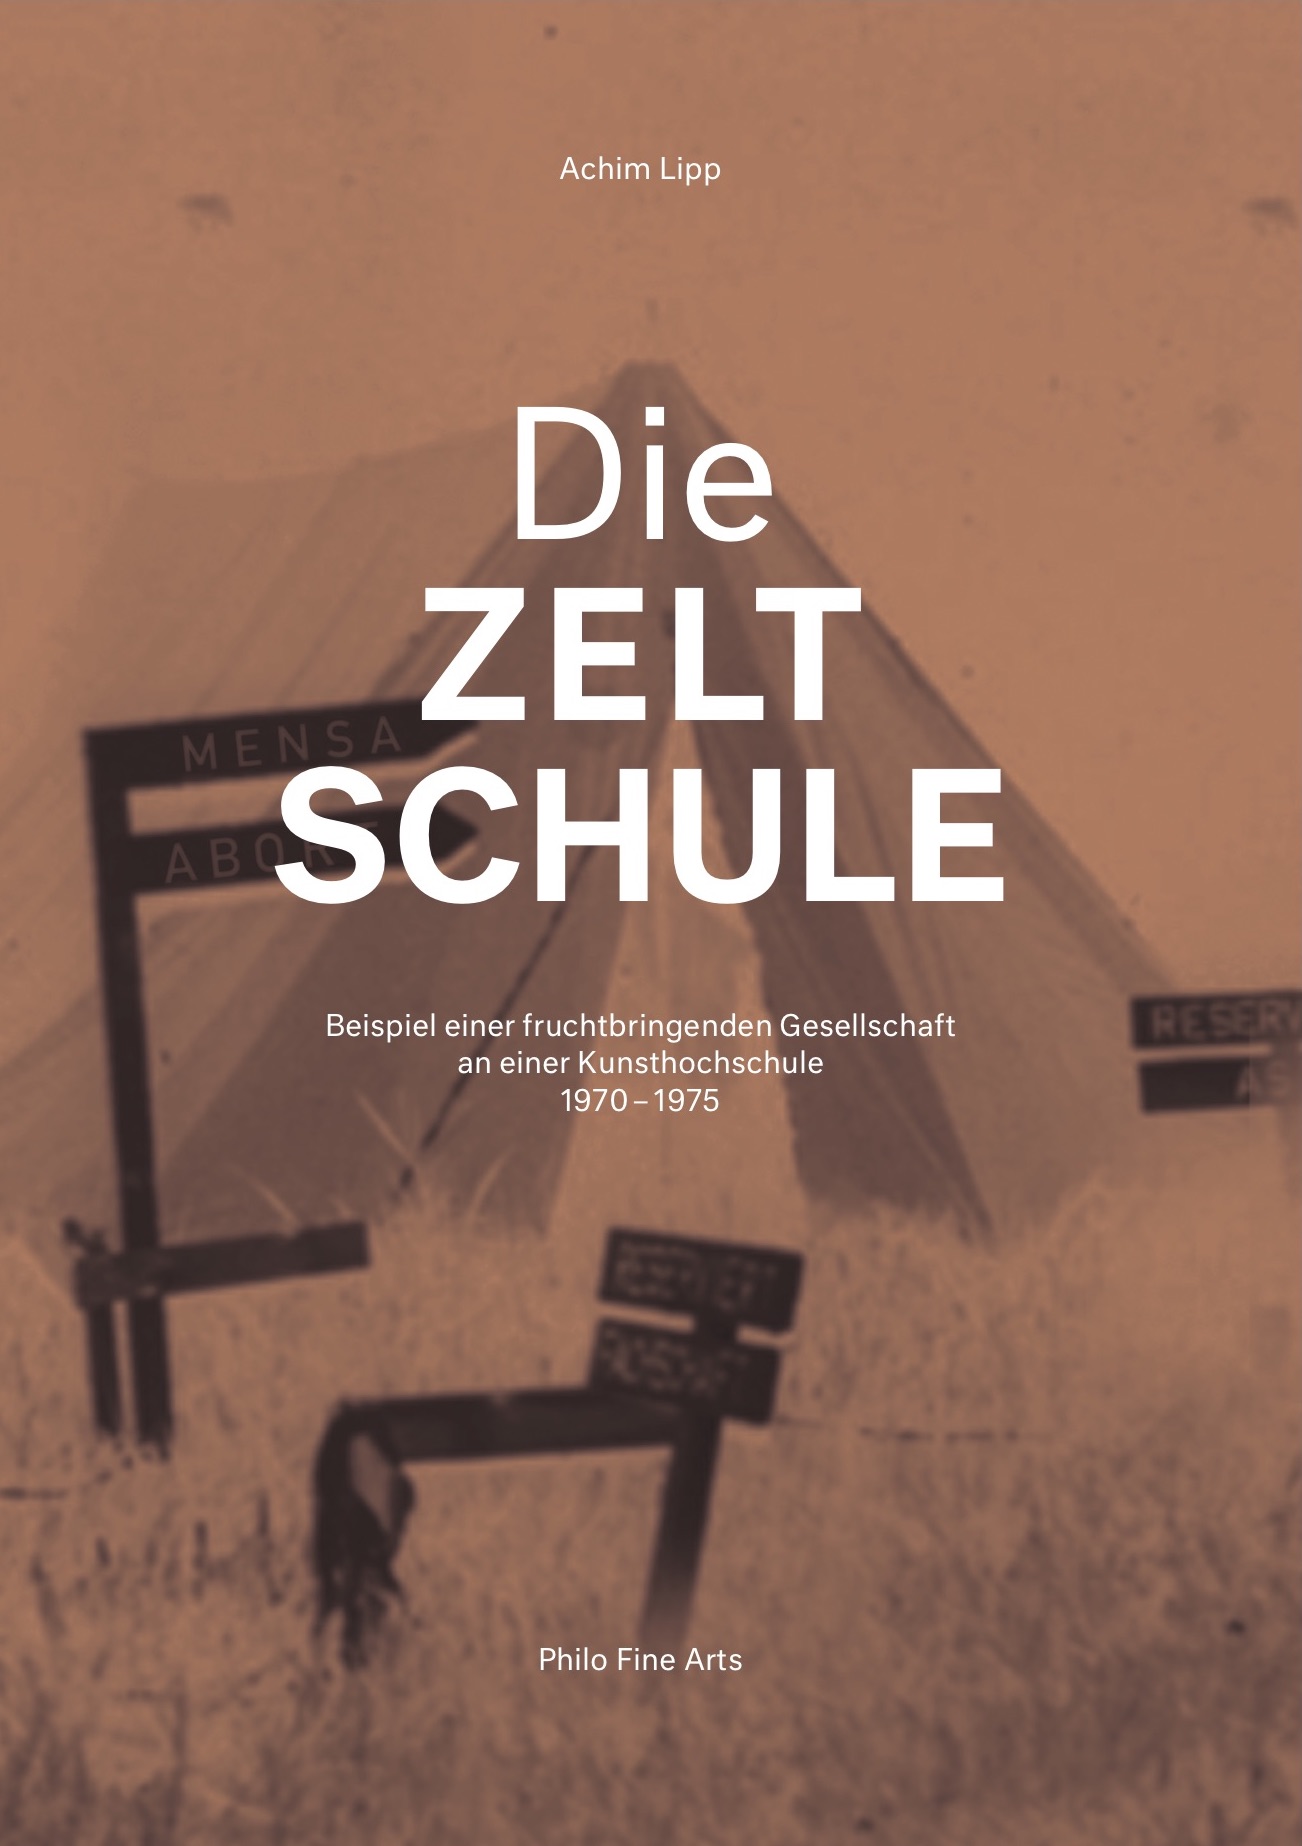 Achim Lipp: Die Zeltschule, Bild: Hamburg: Philo Fine Arts, 2019..